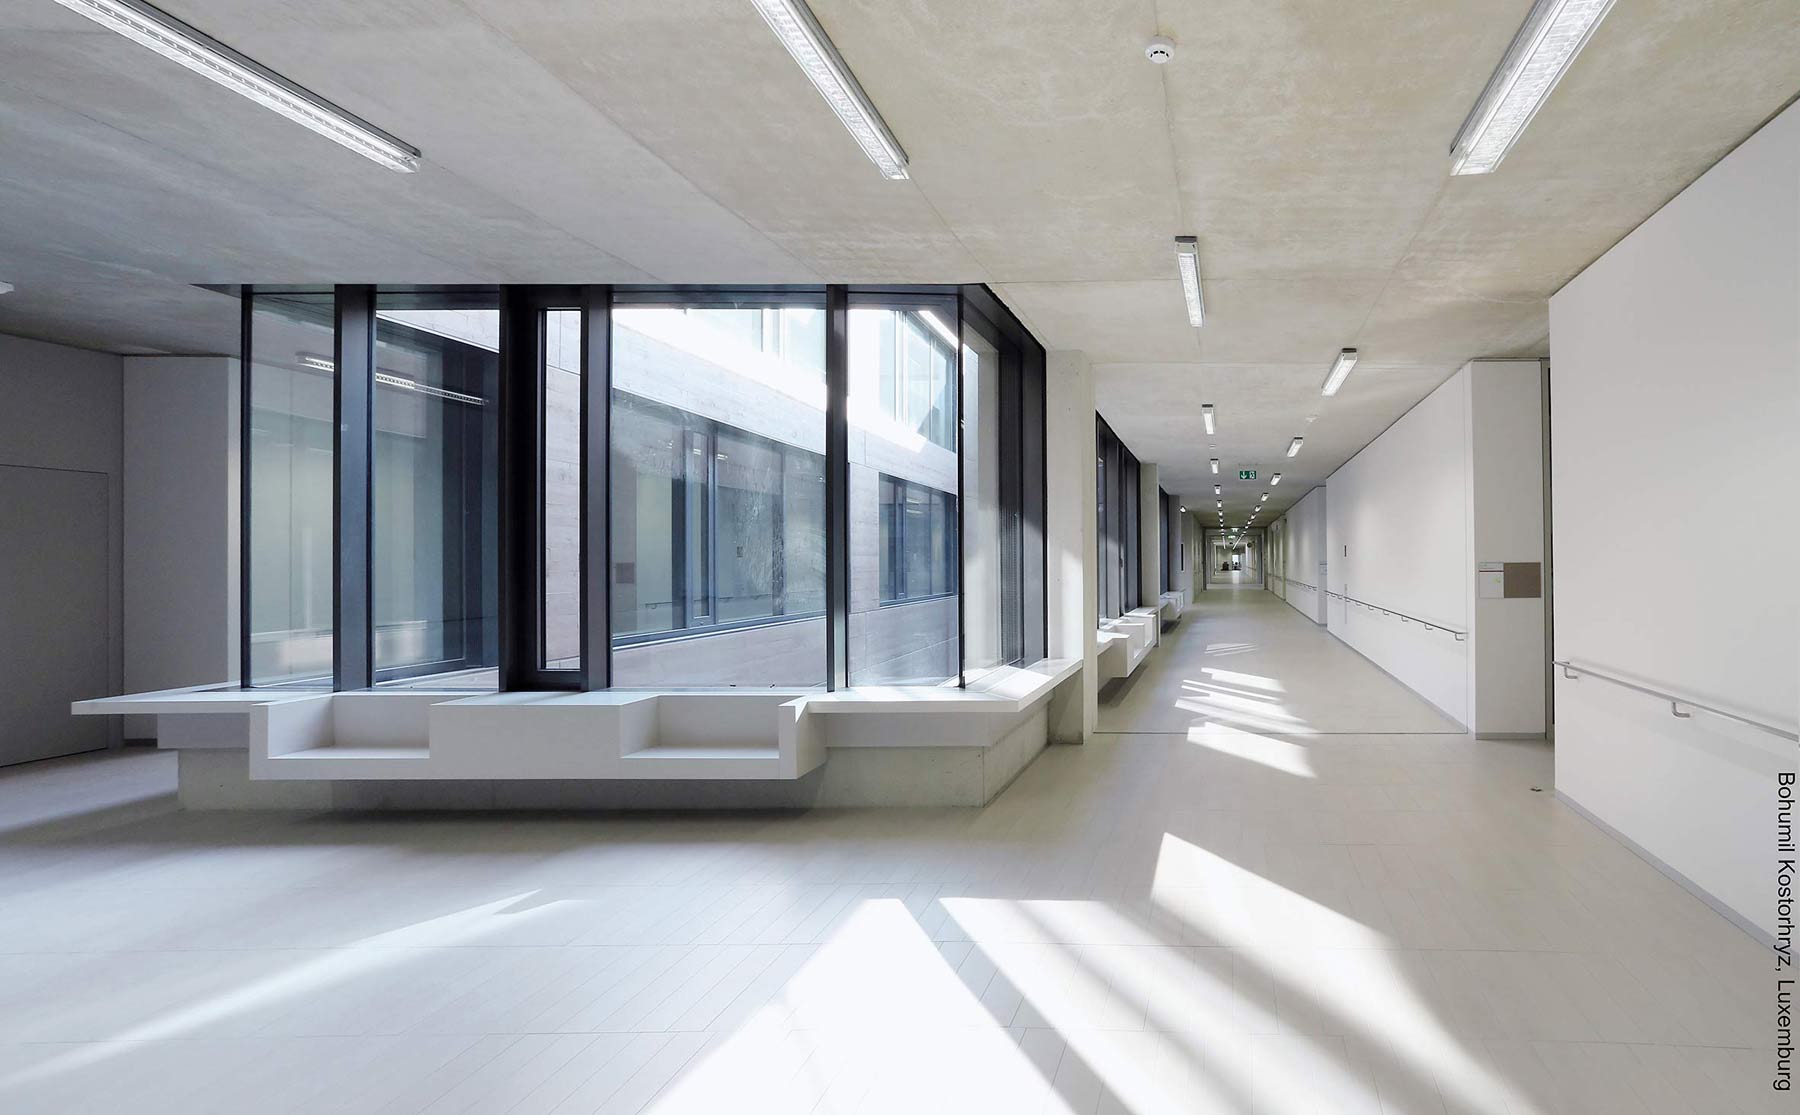 Vnitřní prostory lucemburské školy European School II charakterizuje množství denního světla, jemné světlé barvy a čisté struktury.